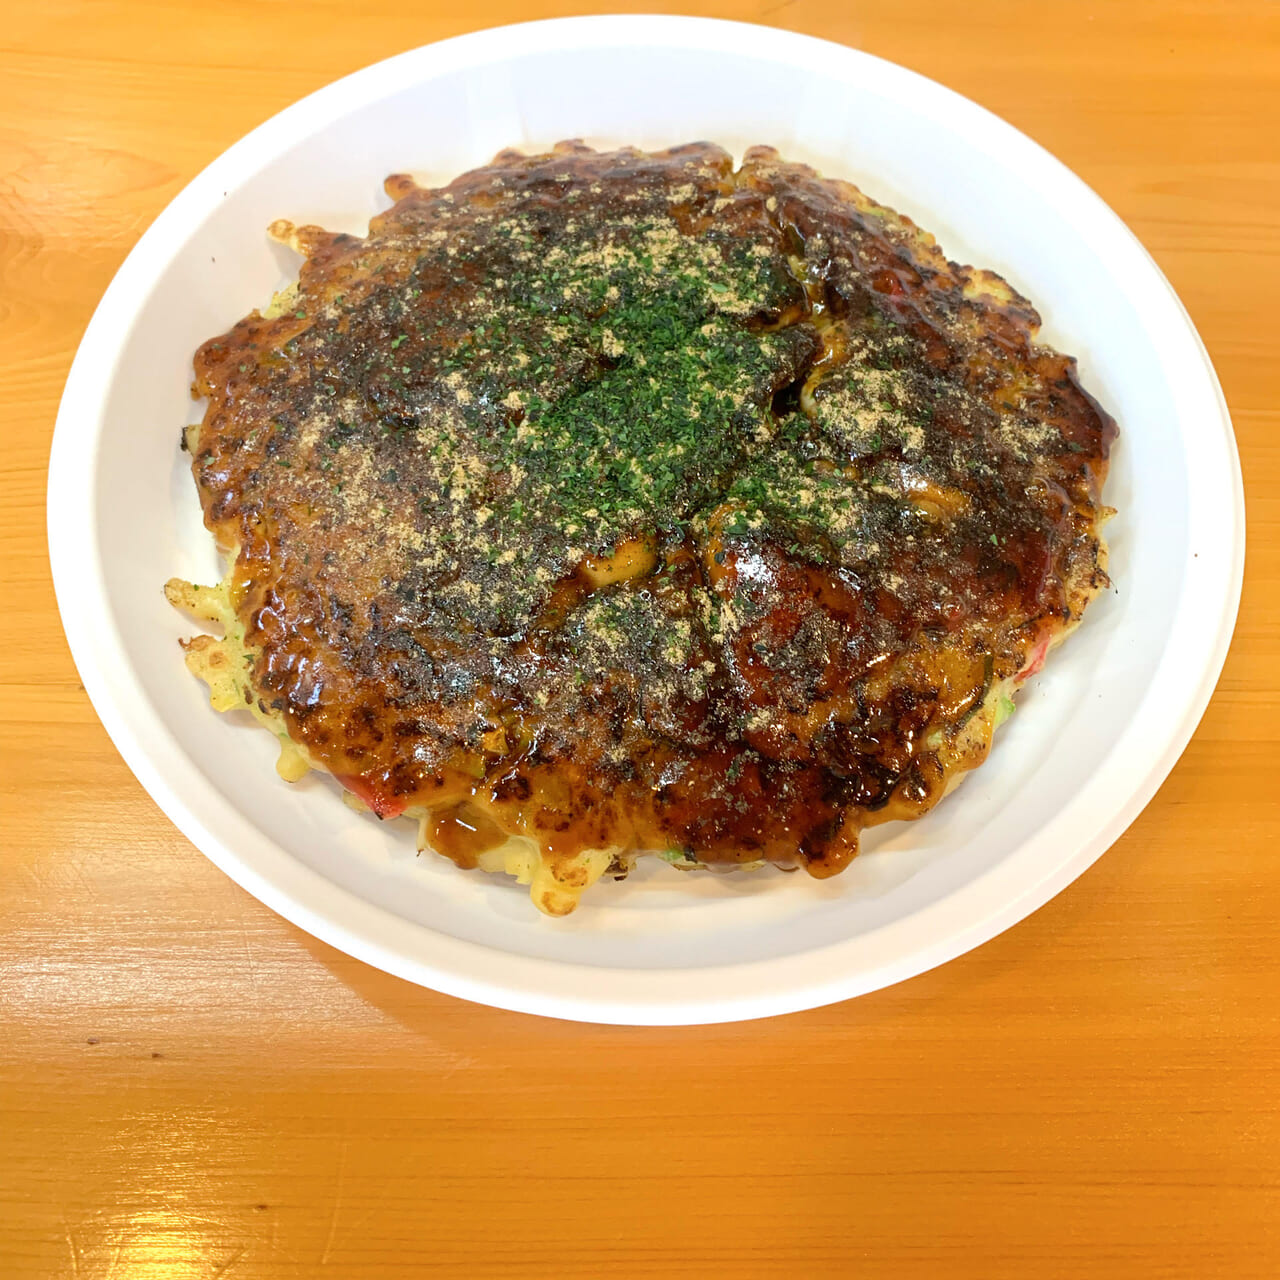 今治市喜田村にある「ふうふう亭」で11月~3月限定の牡蠣お好み焼きが提供されています!!